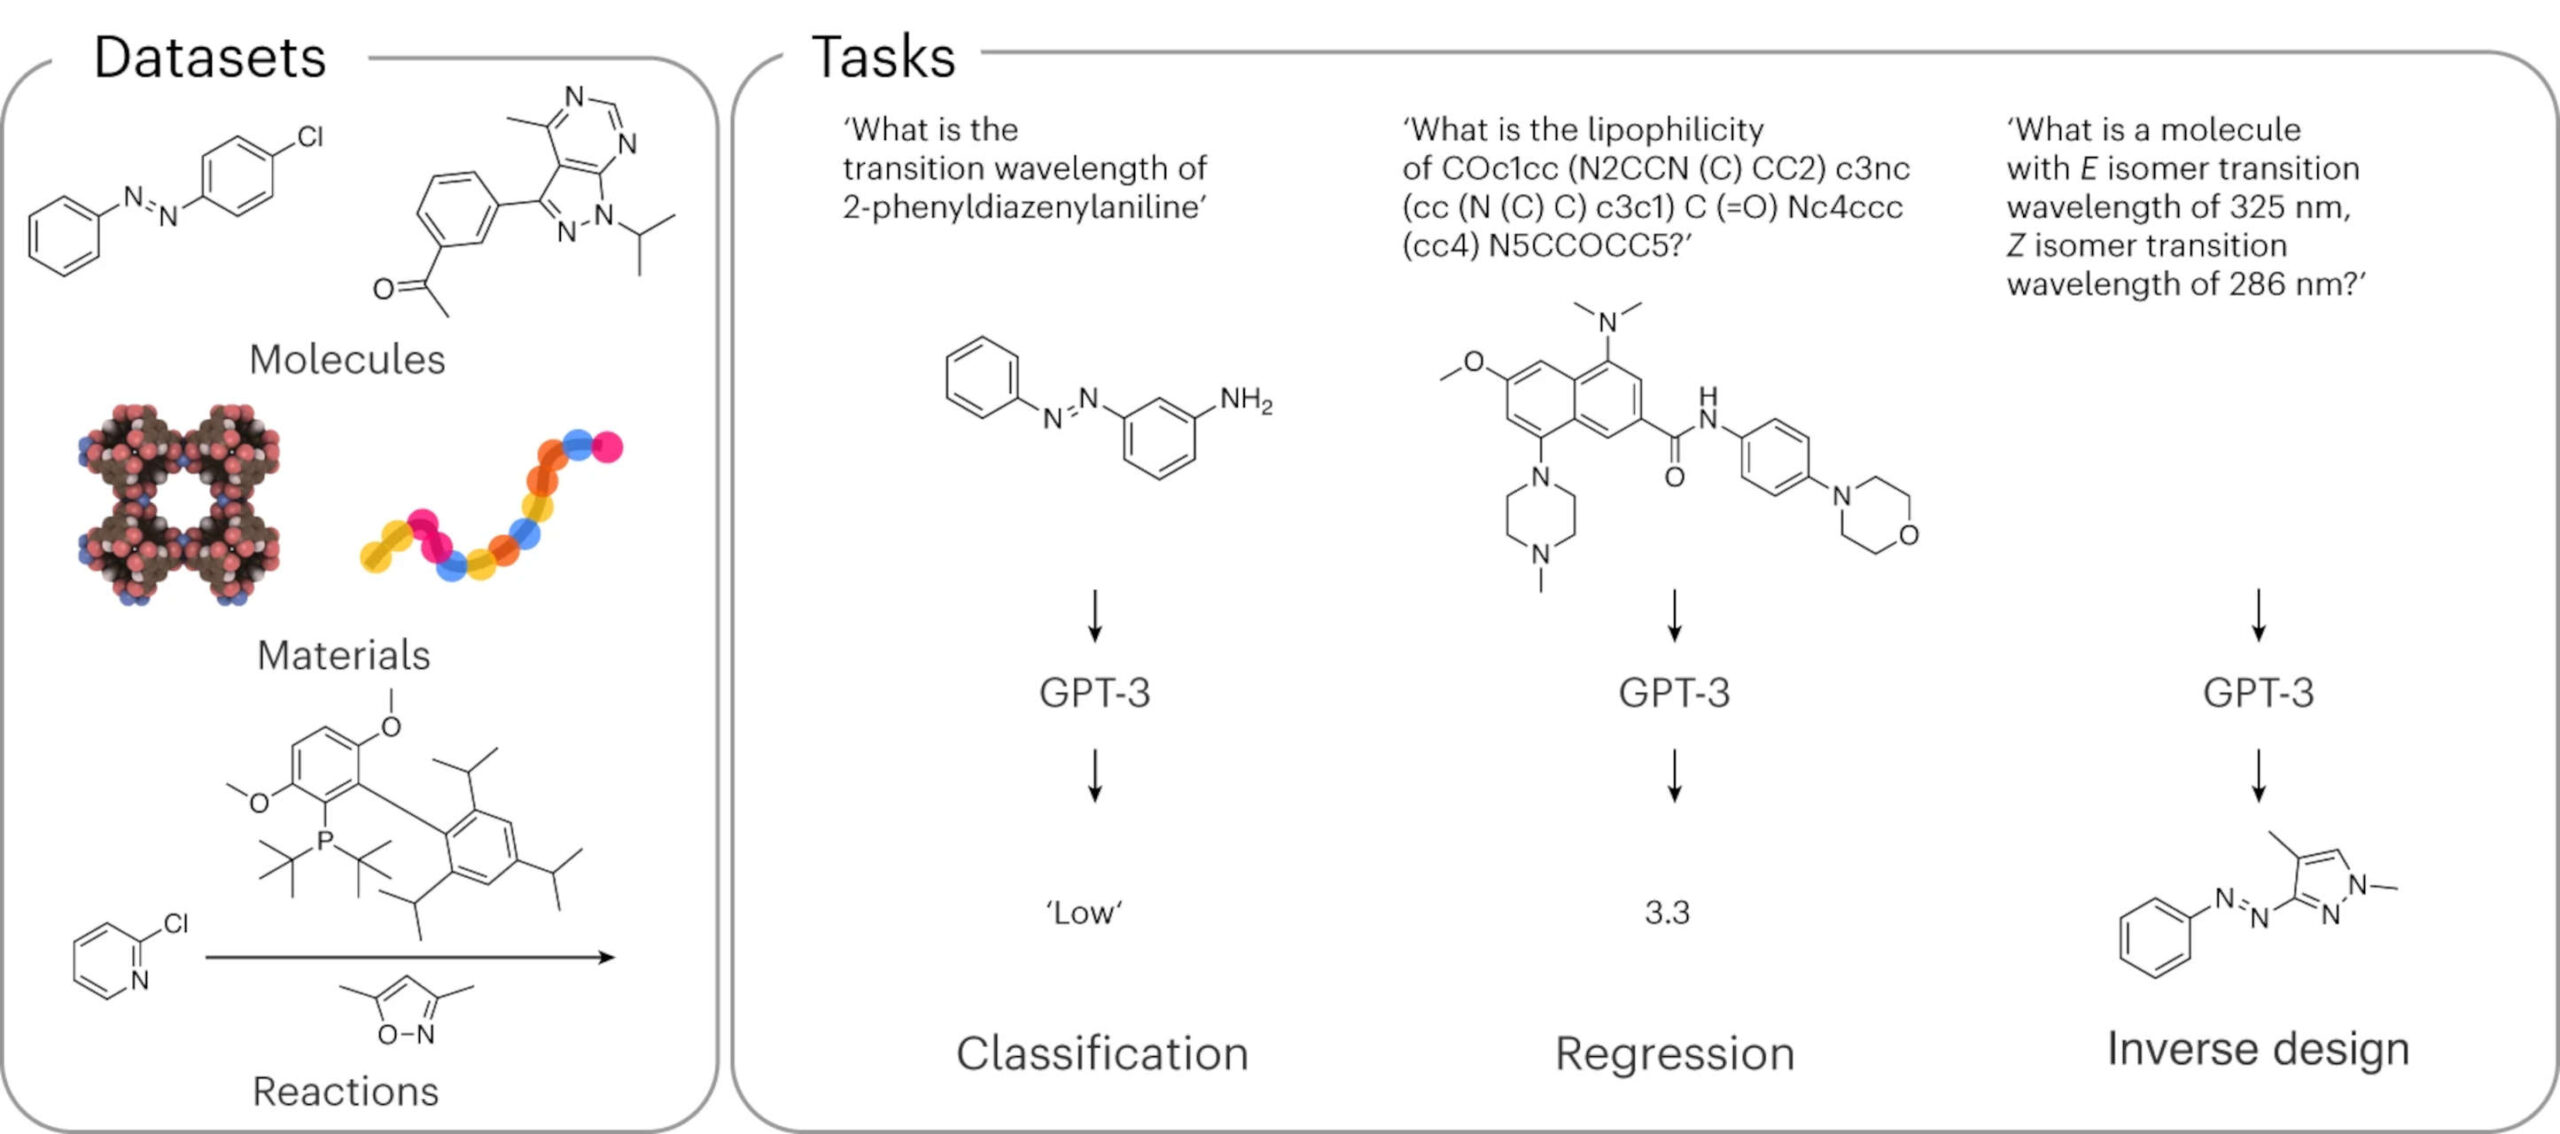 GPT-3 võib keemias spetsialiseeruda ja revolutsiooniliselt muuta